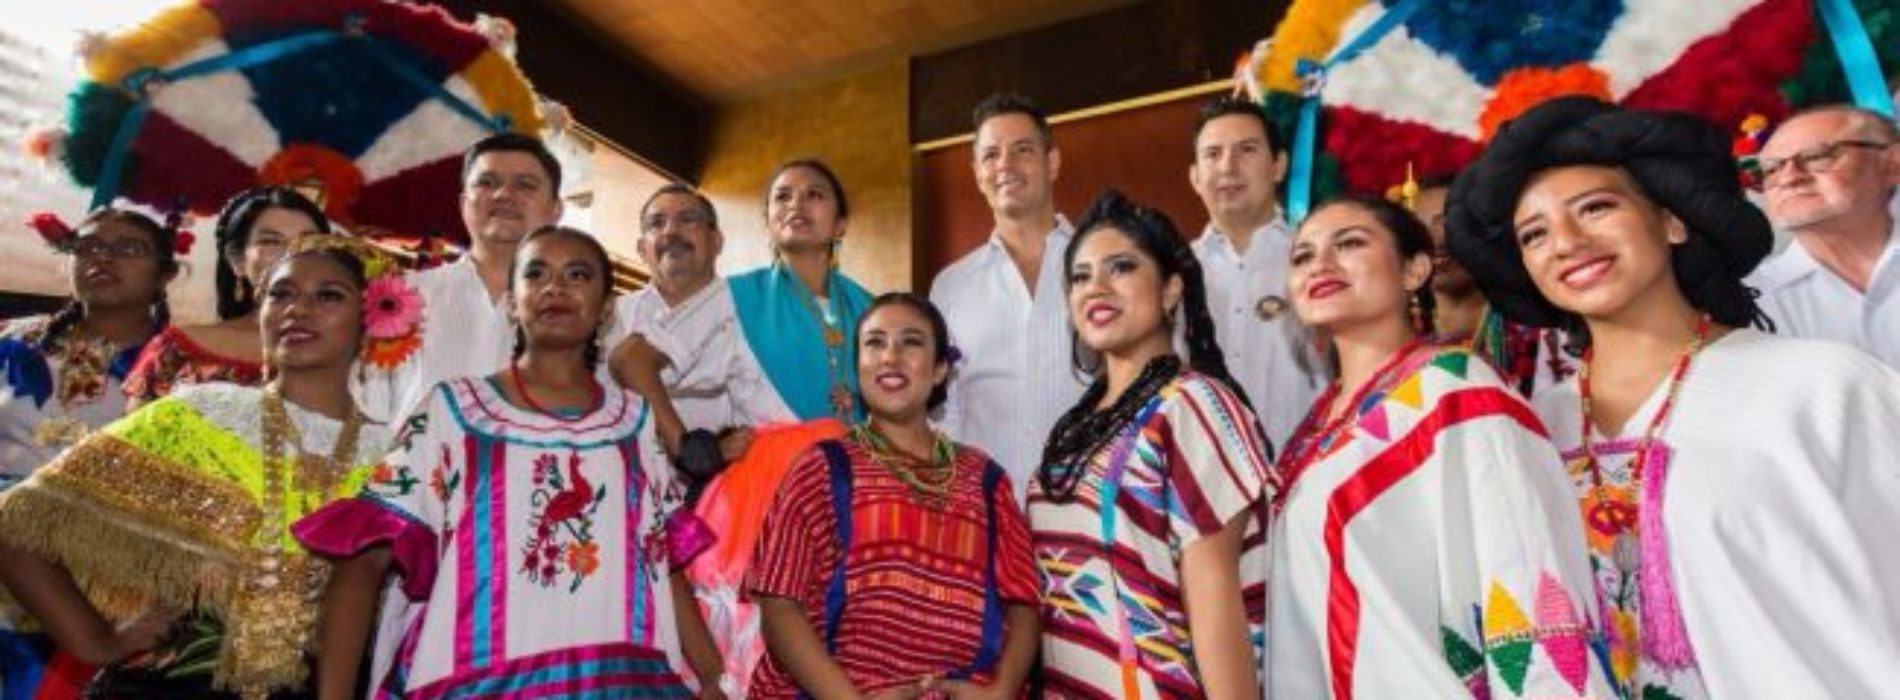 Anuncia Gobierno de Oaxaca fiestas de “Julio, Mes de la
Guelaguetza”